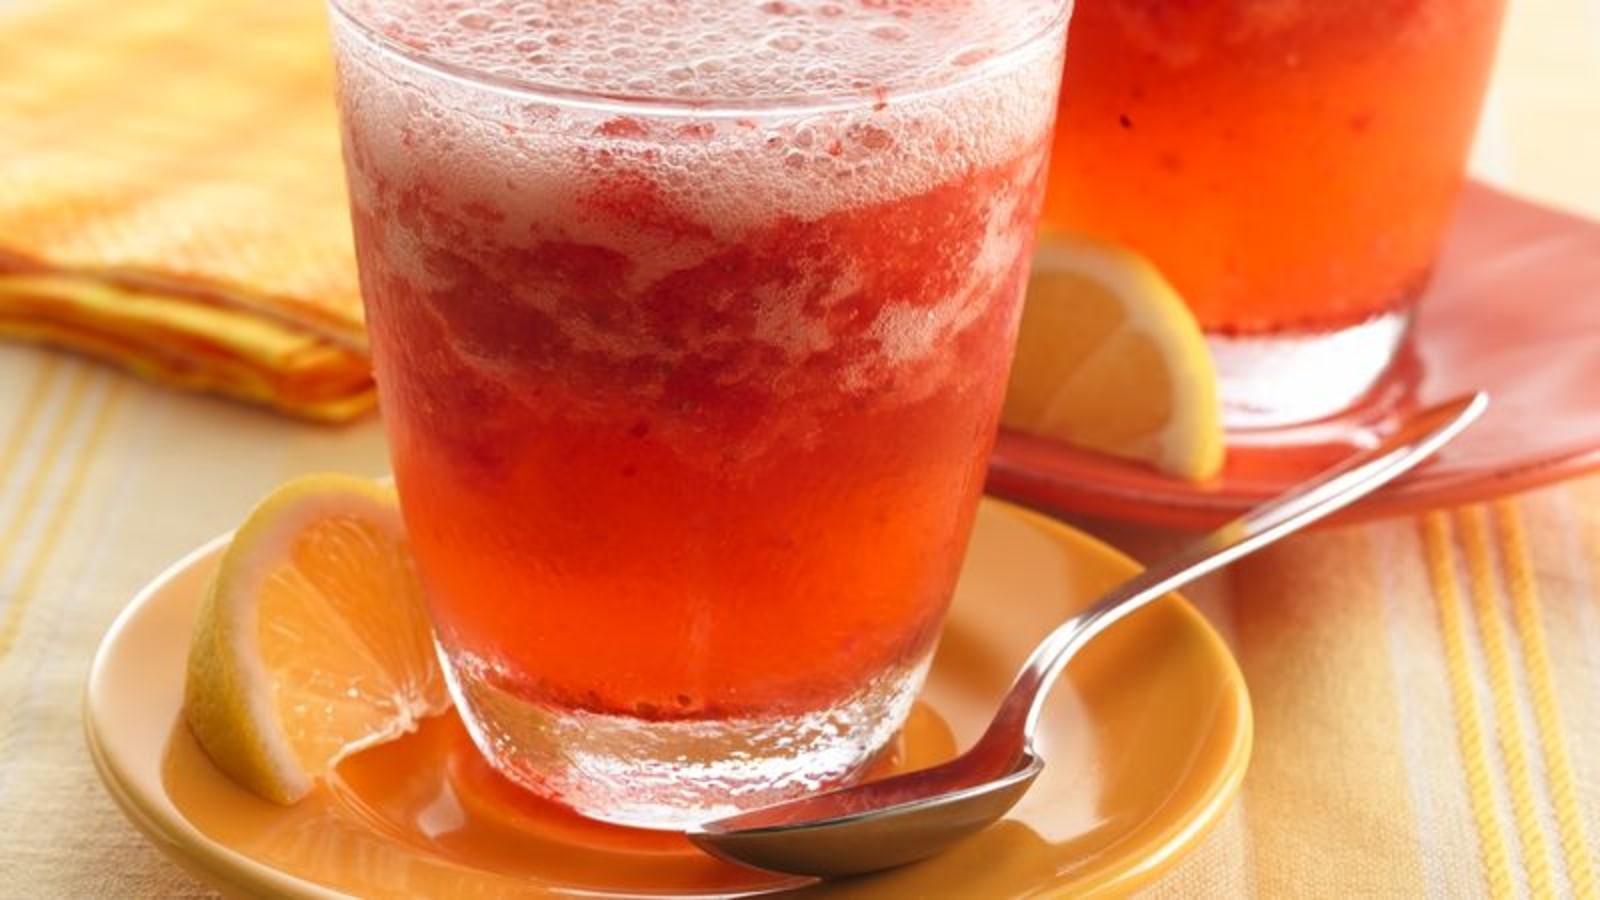 Image of Sparkling Strawberry-Lemonade Slush